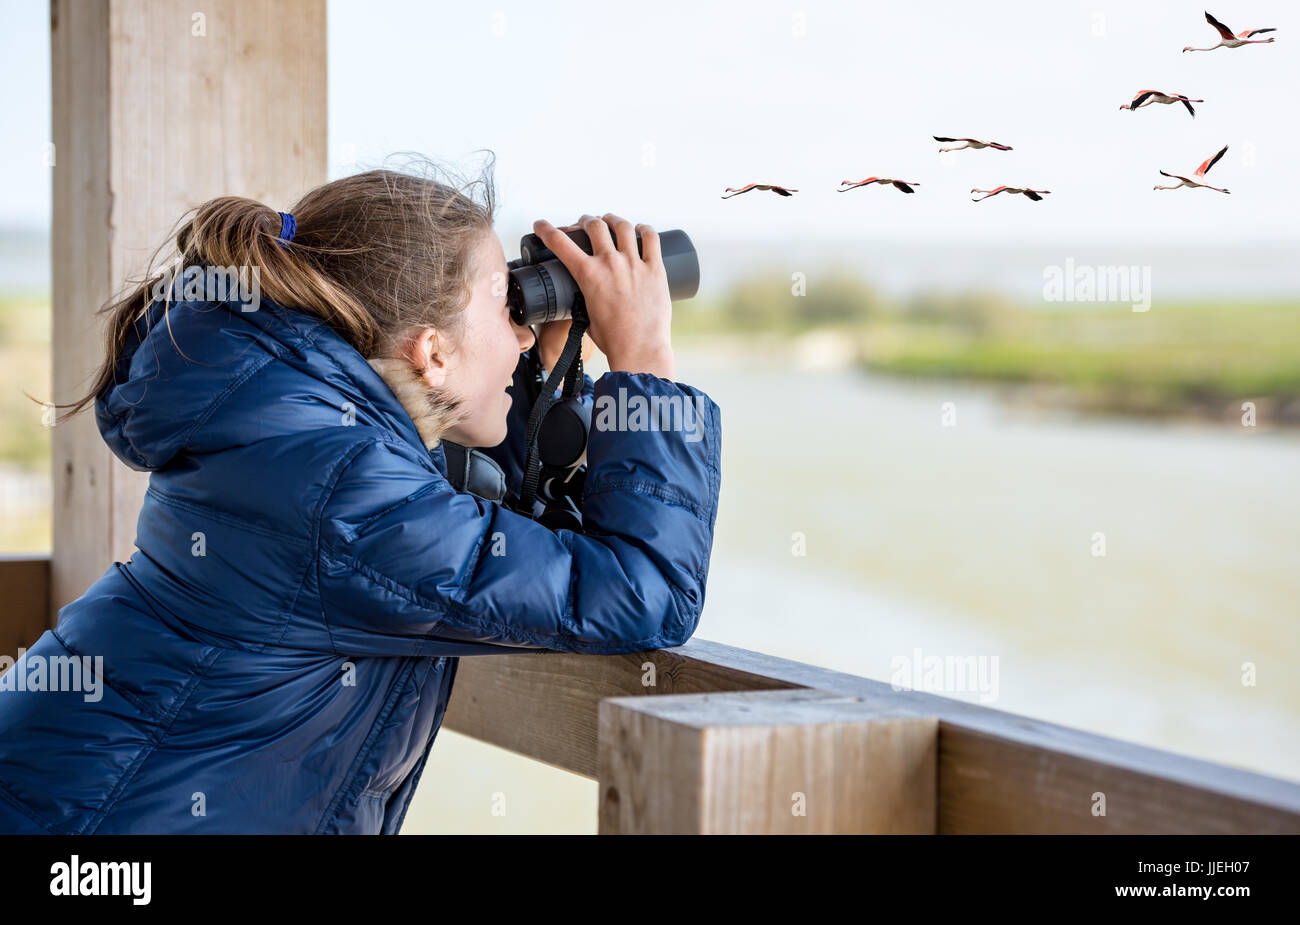 Jeune fille l'observation des oiseaux Banque D'Images